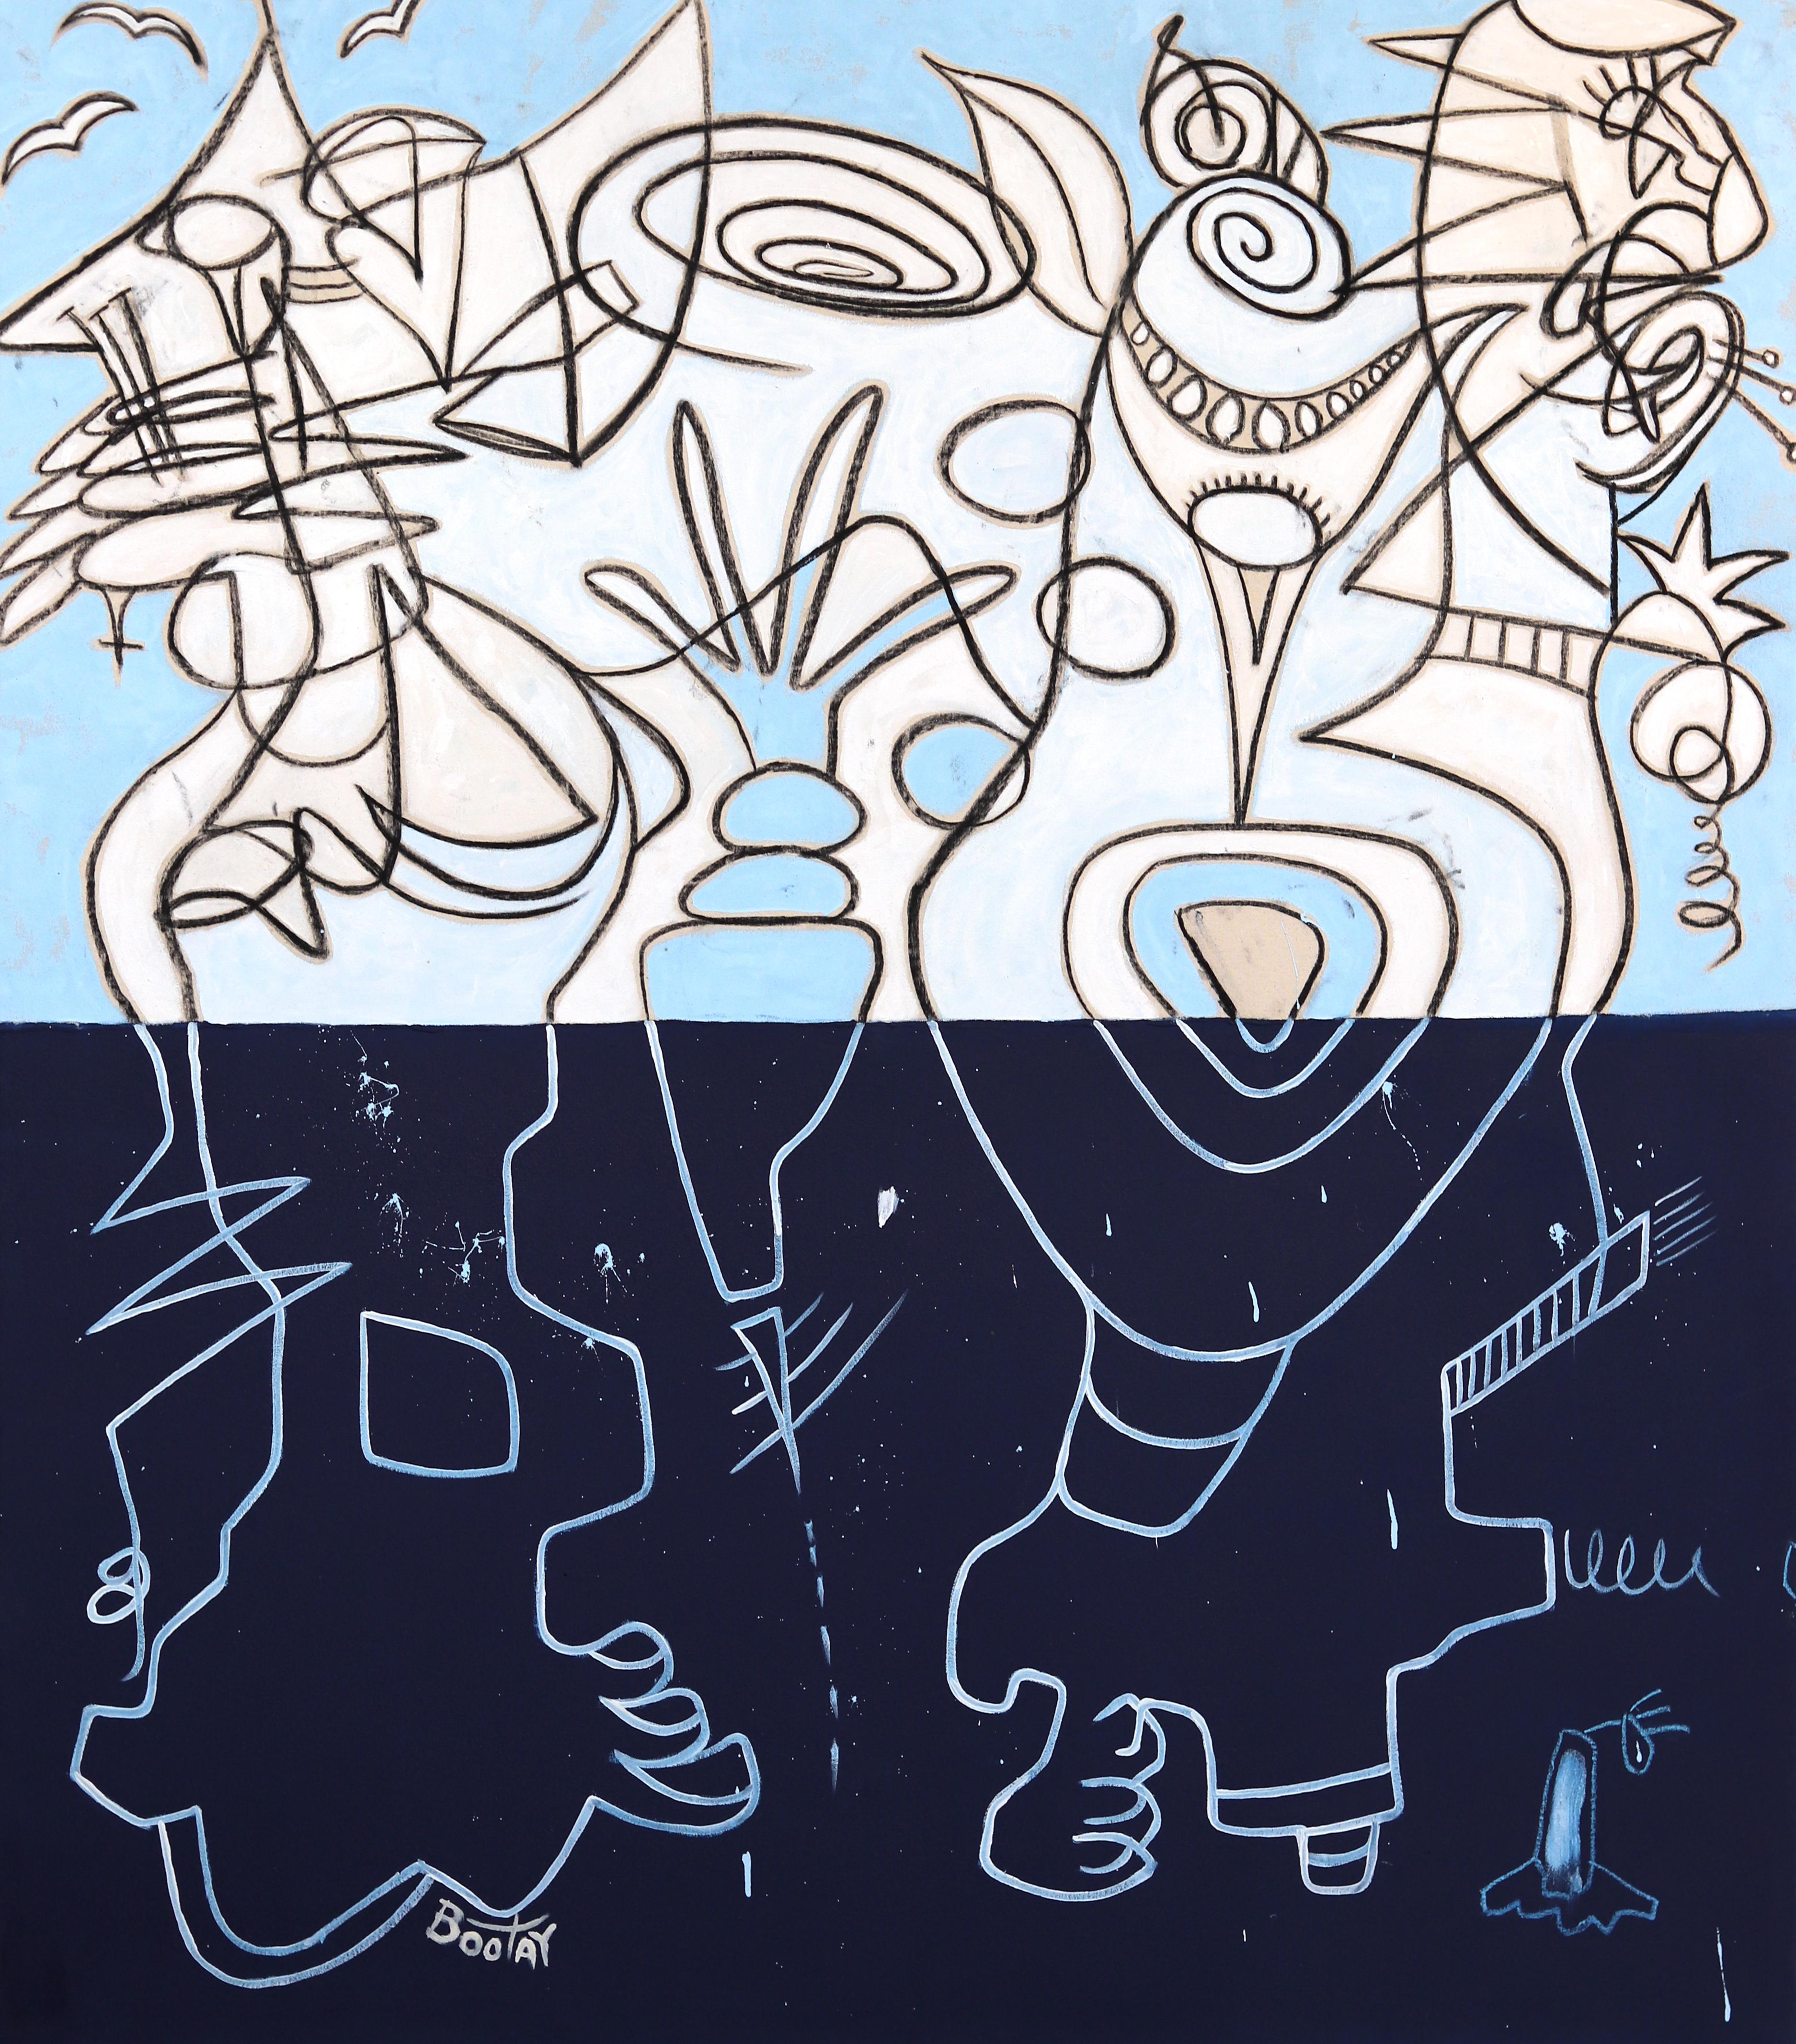 Blauer Horizont – Surrealistisches Mixed Media-Kunstwerk in zweifarbigem Blau, Original auf Leinwand  – Mixed Media Art von Rue Bootay